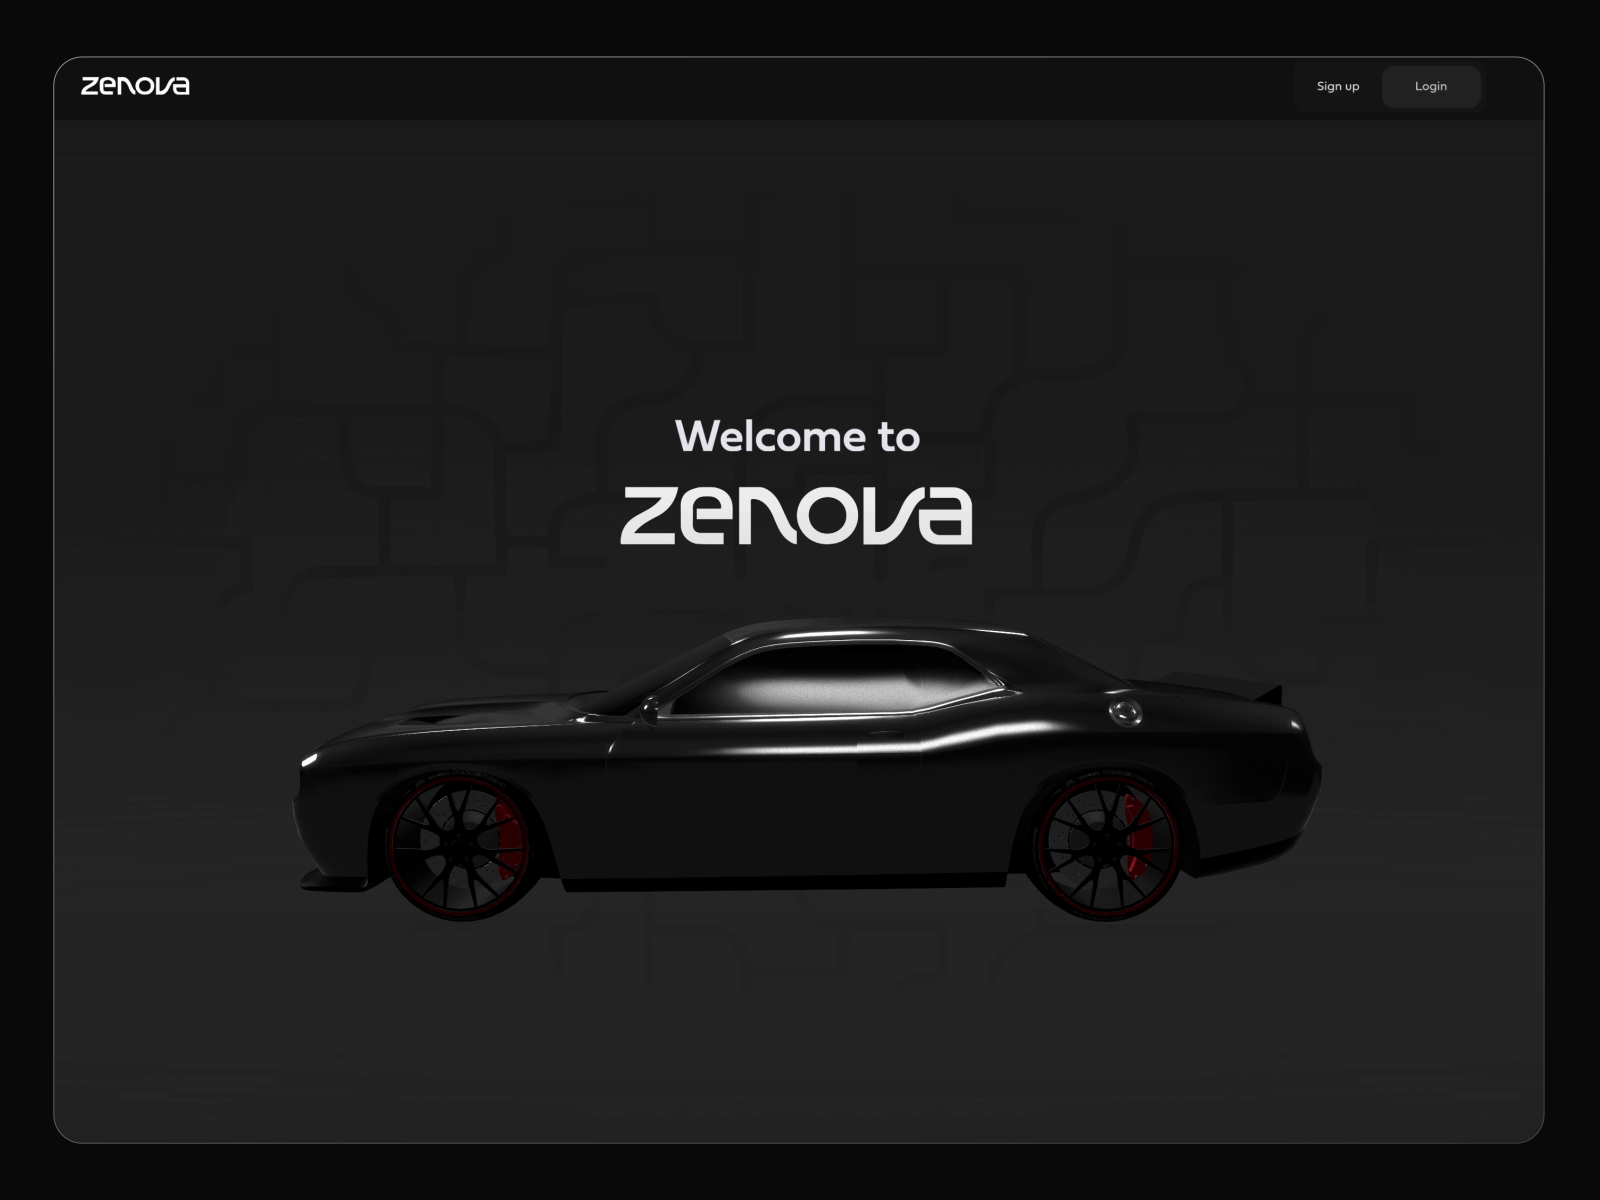 Zenova - Web Experience